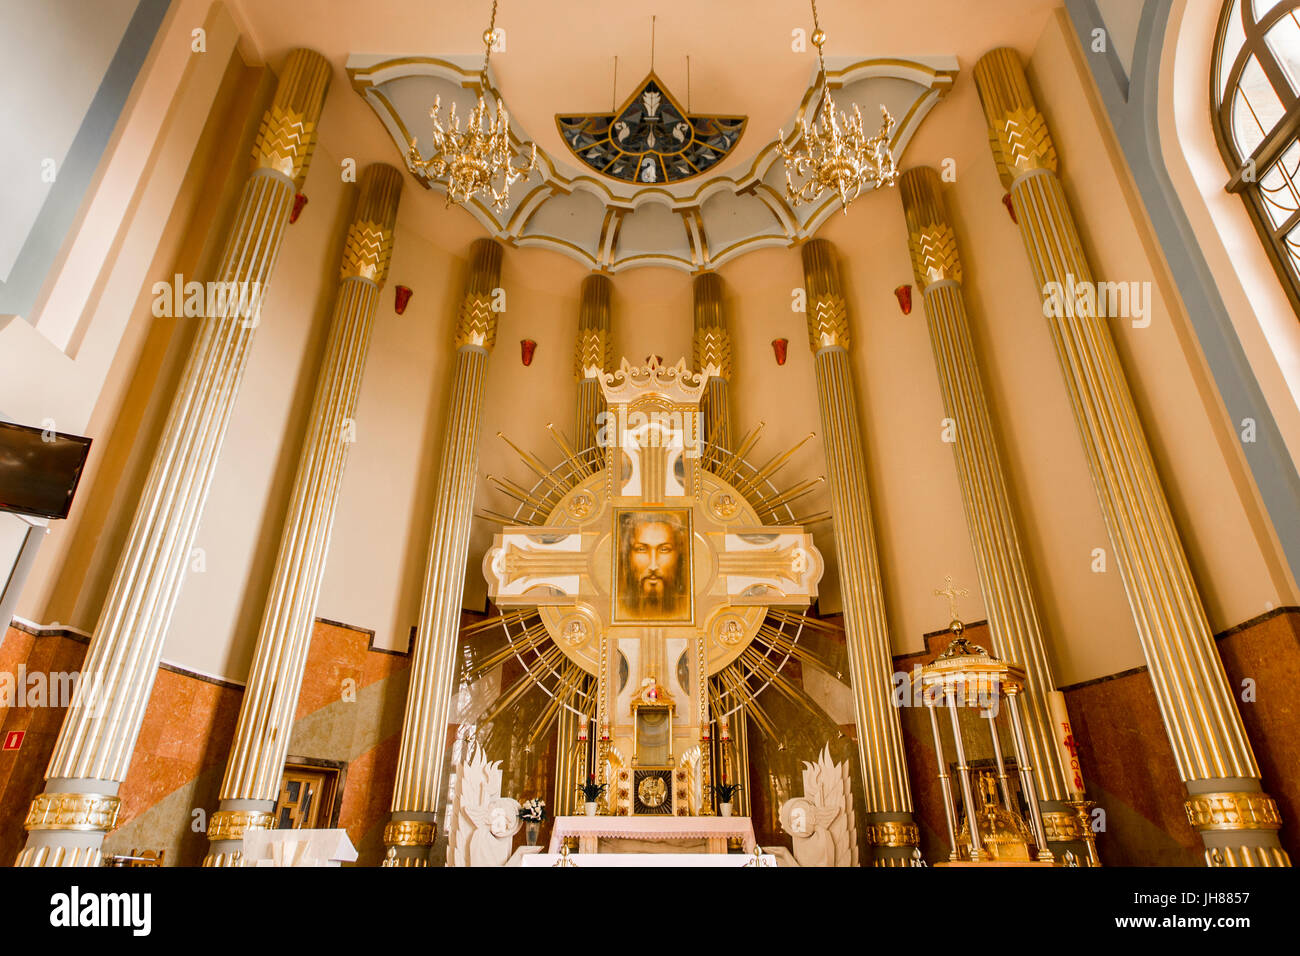 Im Inneren der Basilika unserer lieben Frau von Lichen gewidmet eine römisch-katholische Kirche Our Lady of Sorrows, Königin von Polen. Eines der höchsten und größten c Stockfoto